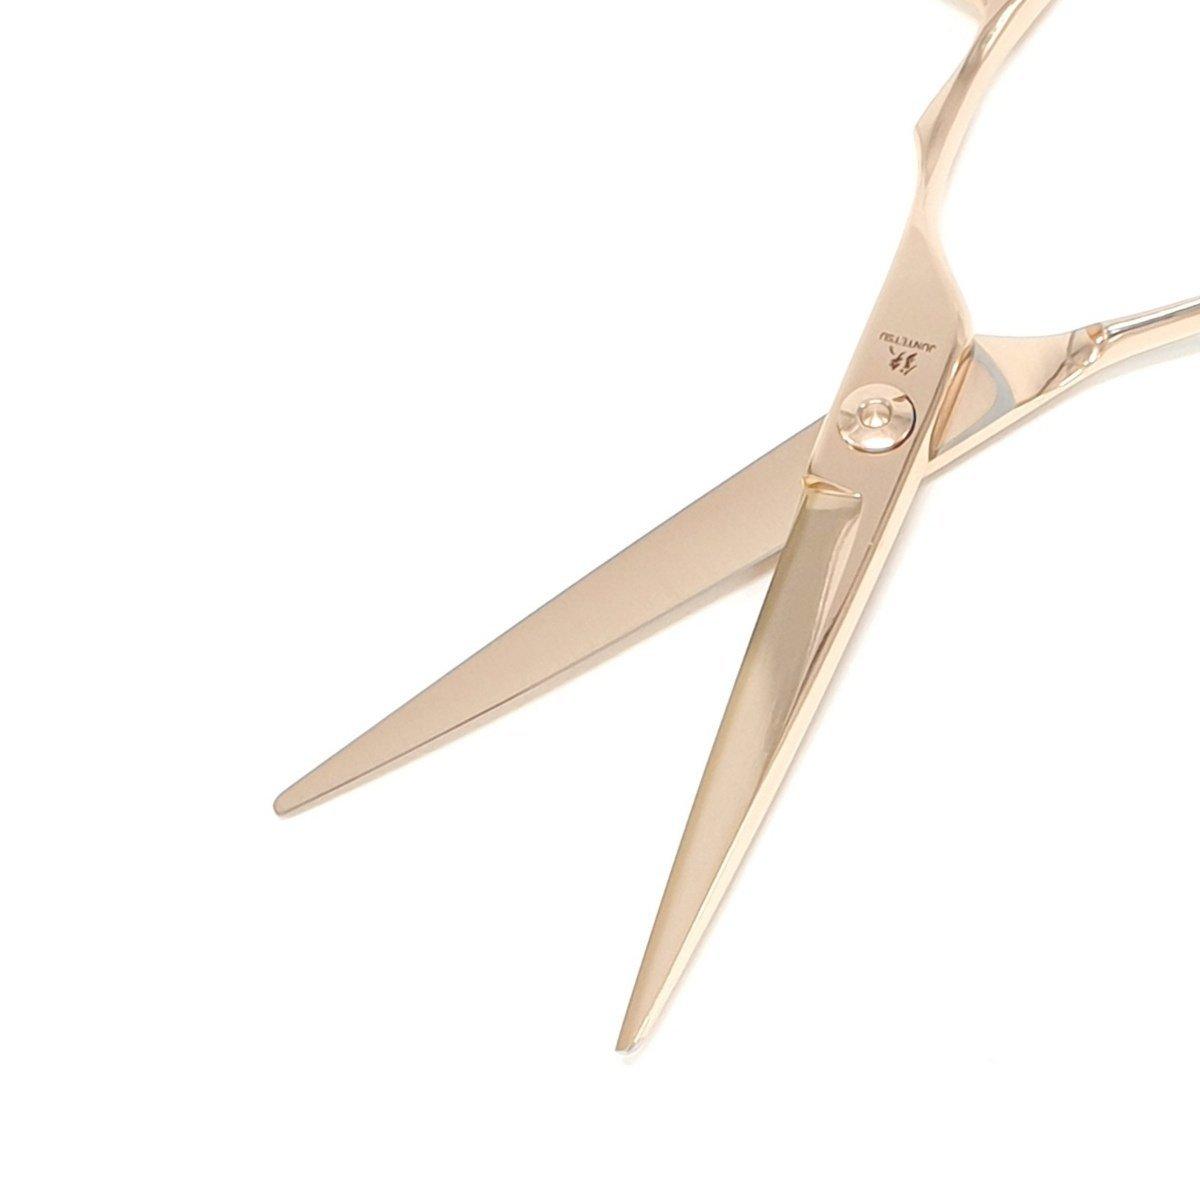 Juntetsu Rose Gold Cutting Scissors - Japan Scissors